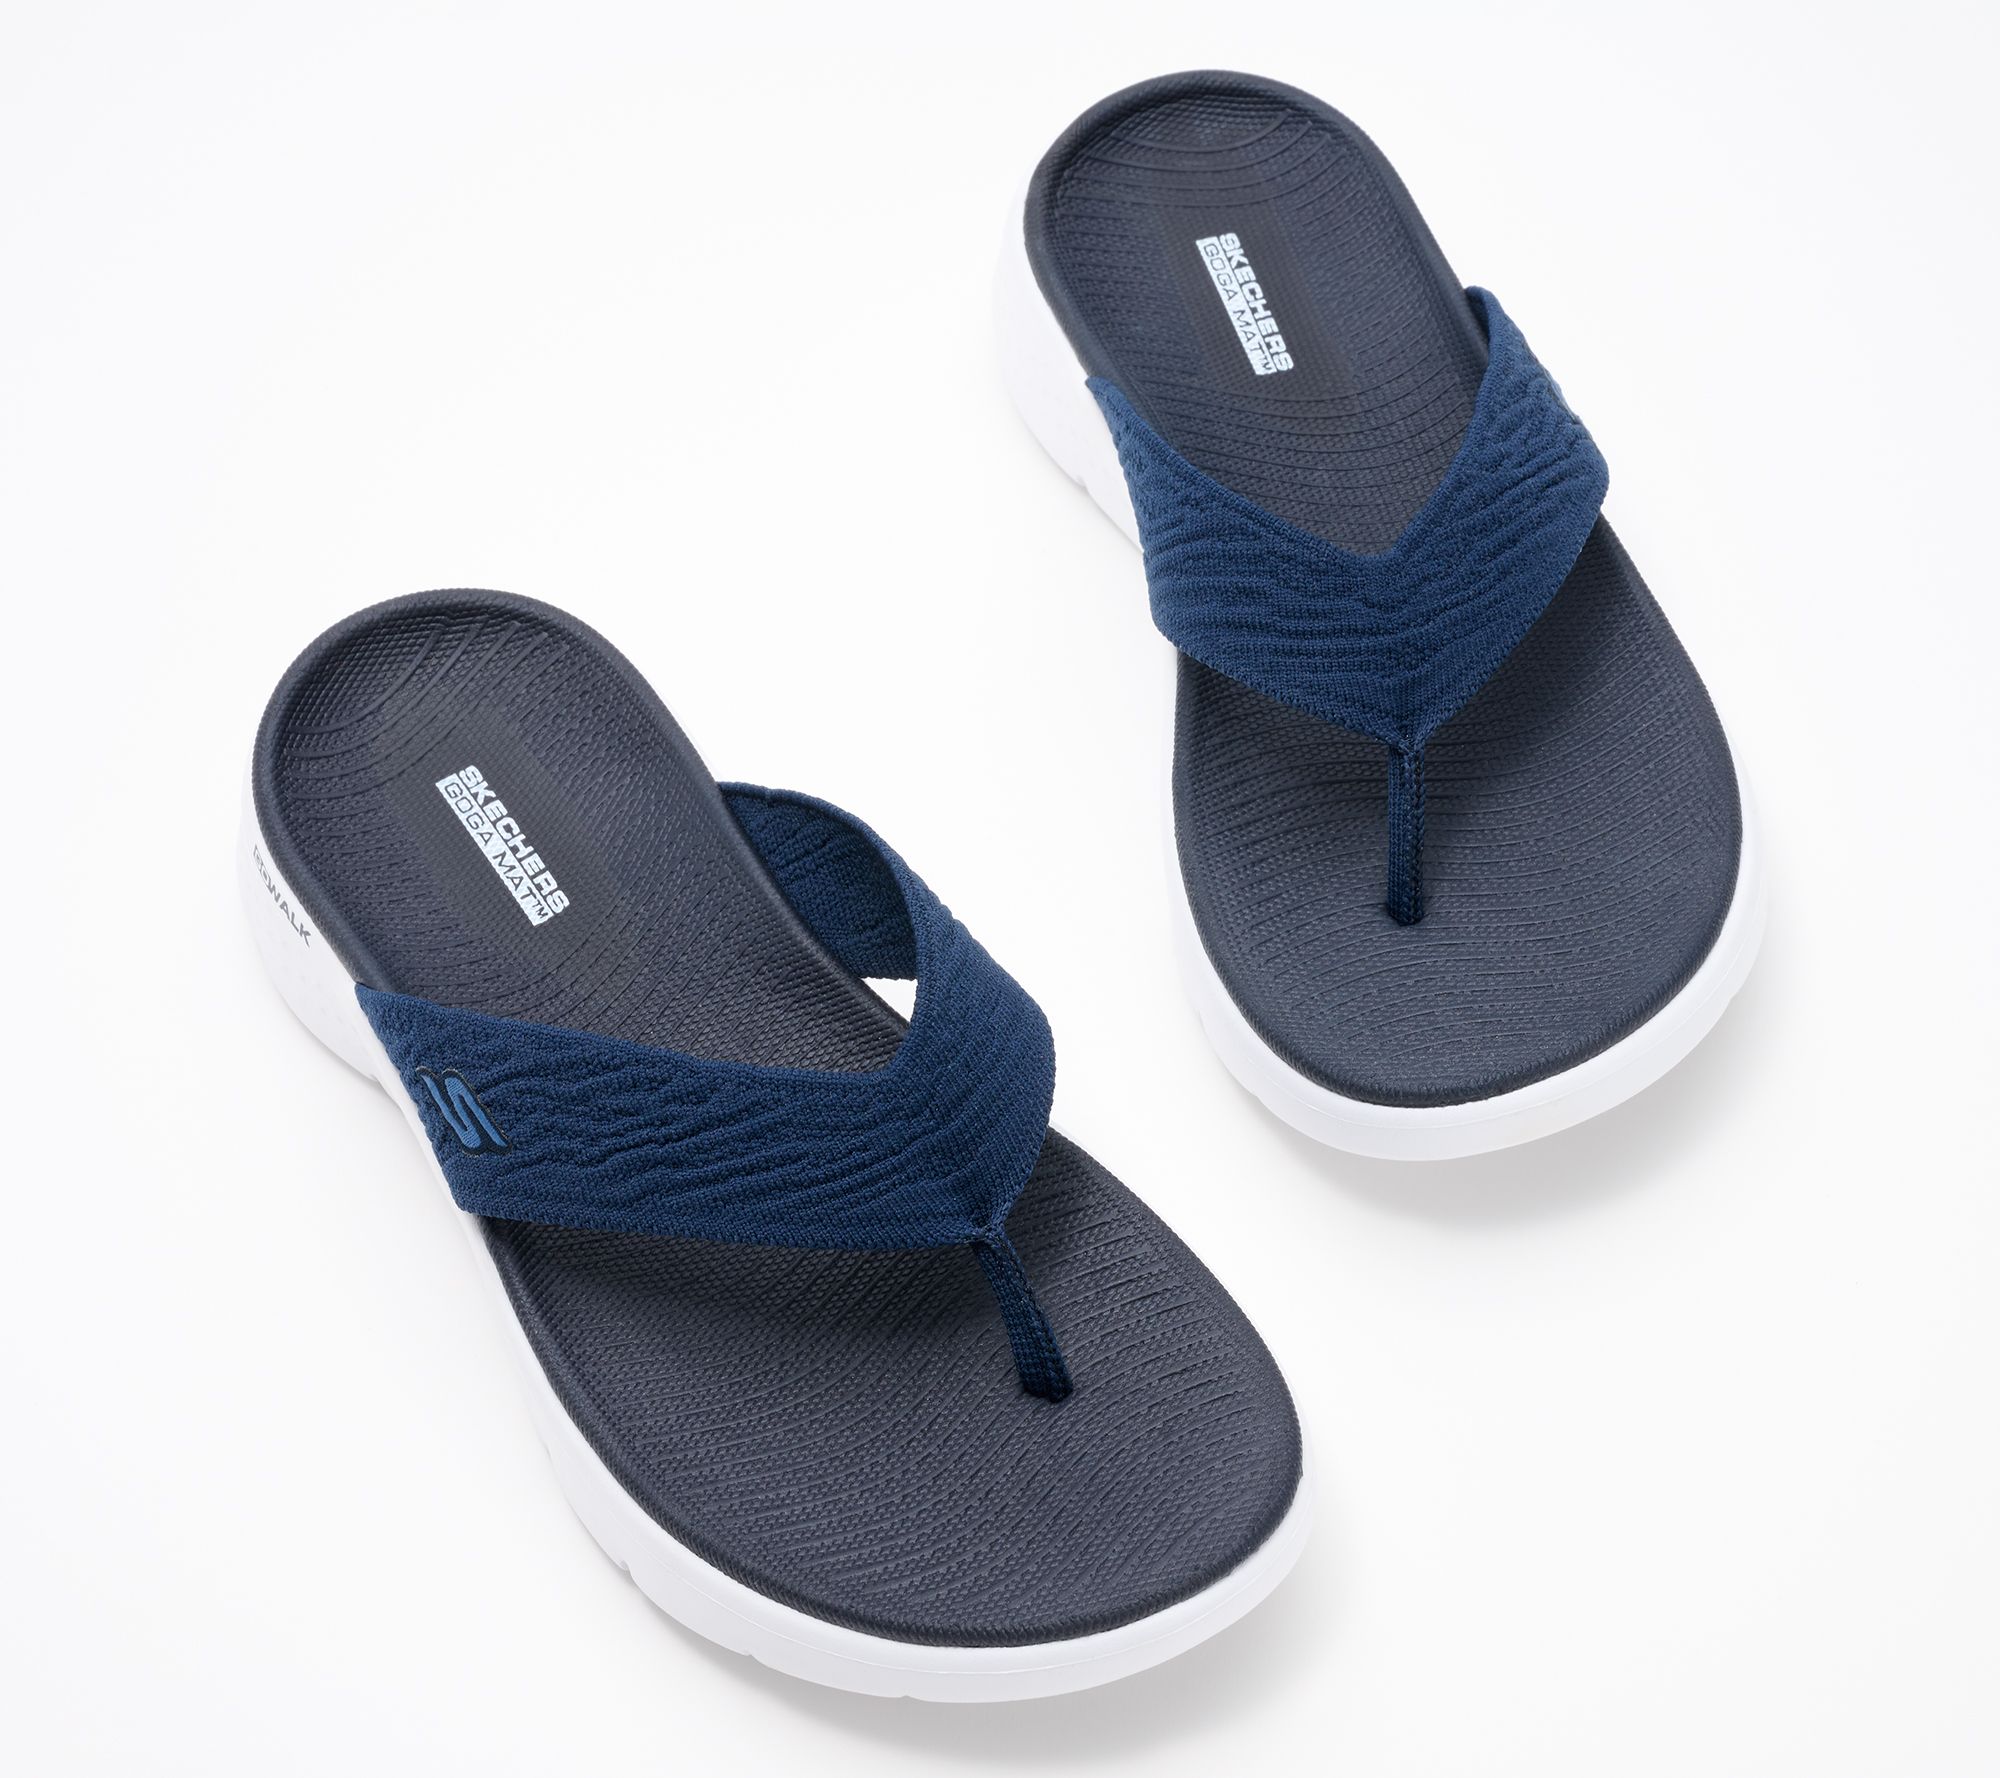 Skechers GOwalk Flex Arch Fit Vegan Washable Knit Sandals - Splendor 